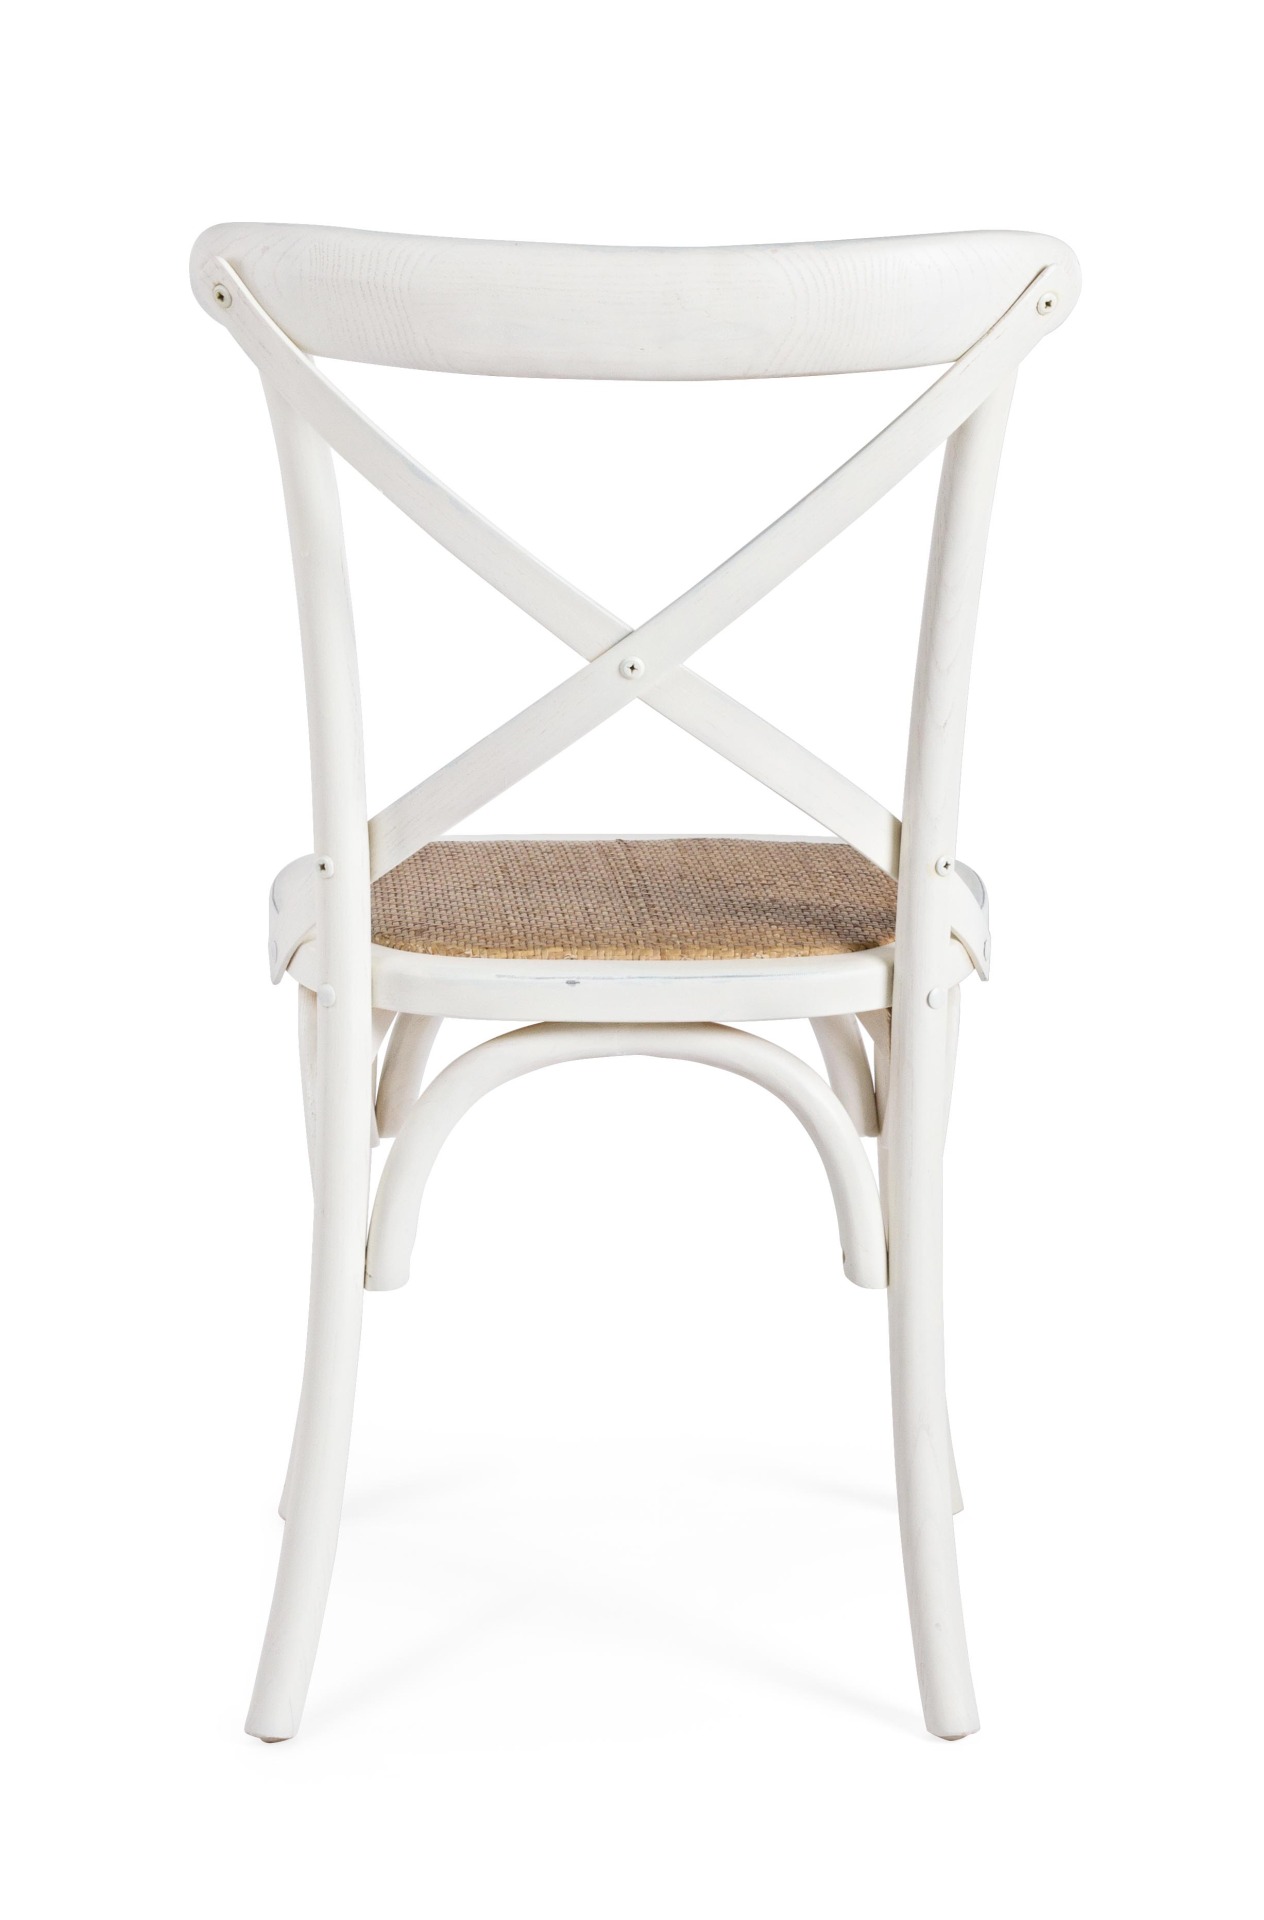 Der Stuhl Cross überzeugt mit seinem klassischen Design. Gefertigt wurde der Stuhl aus Ulmenholz, welches einen weißen Farbton besitzt. Die Sitz- und Rückenfläche ist aus Rattan gefertigt. Die Sitzhöhe beträgt 46 cm.